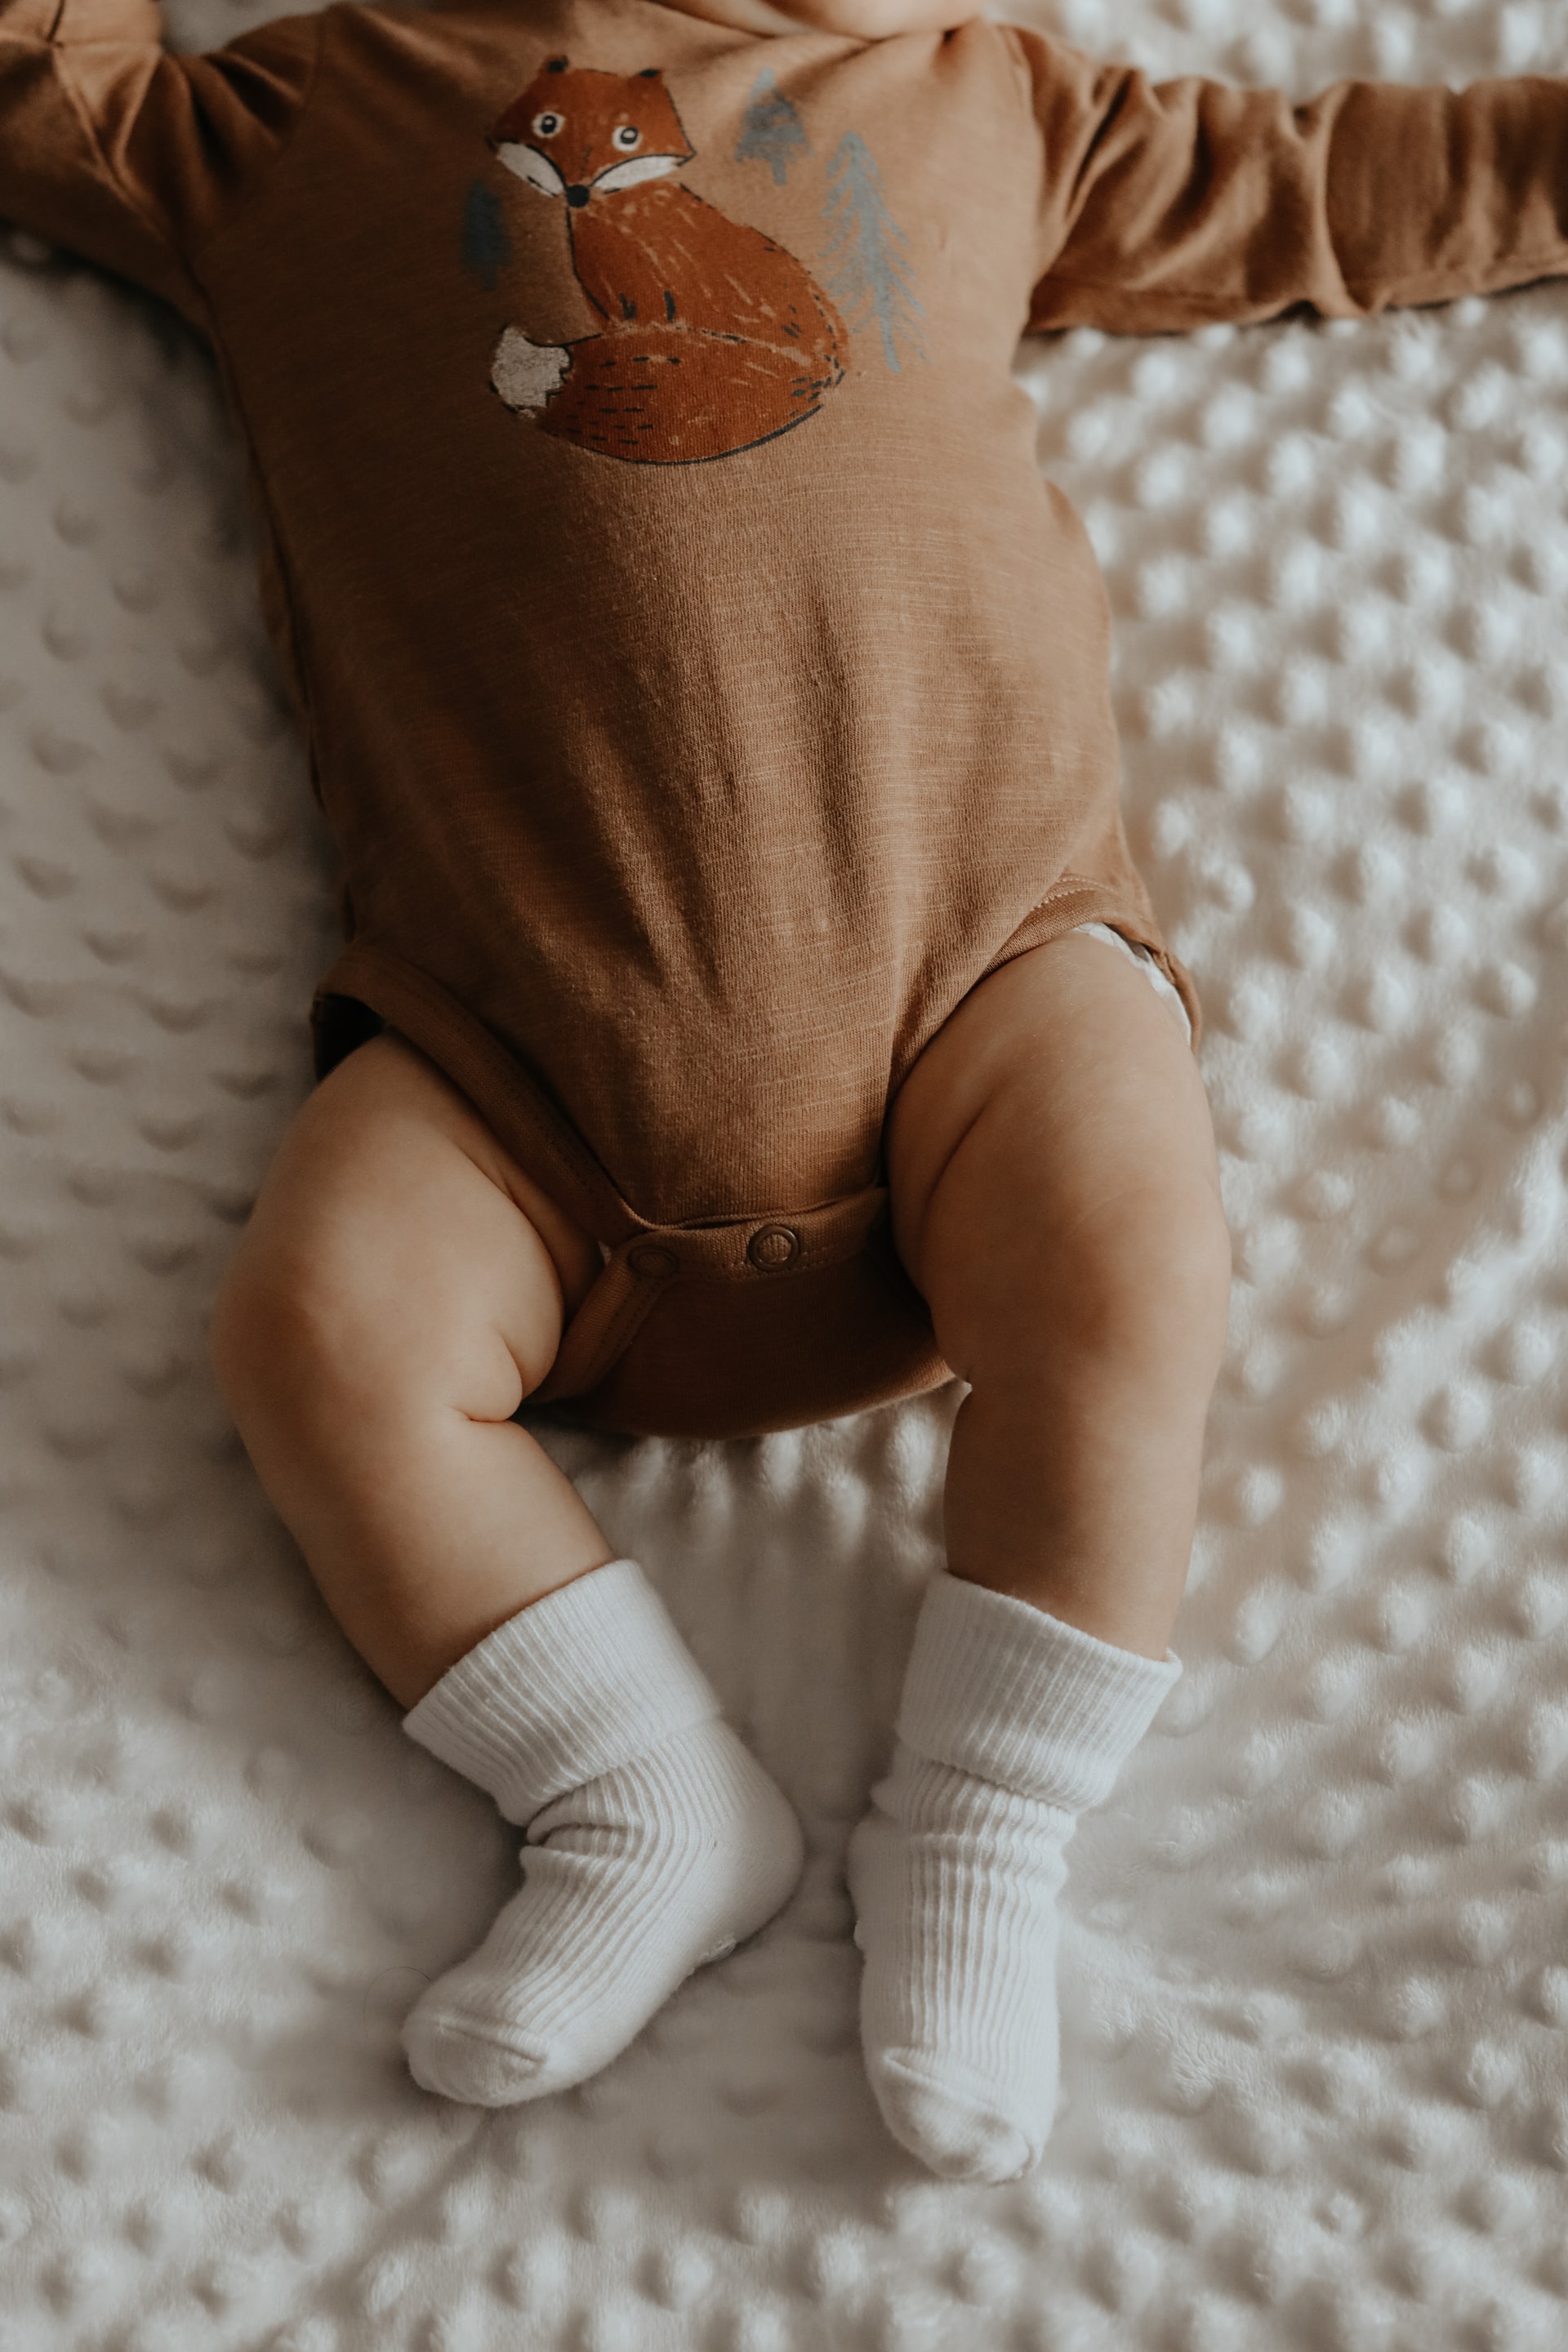 Cum alegem body-ul bebelușului și al nou născutului?